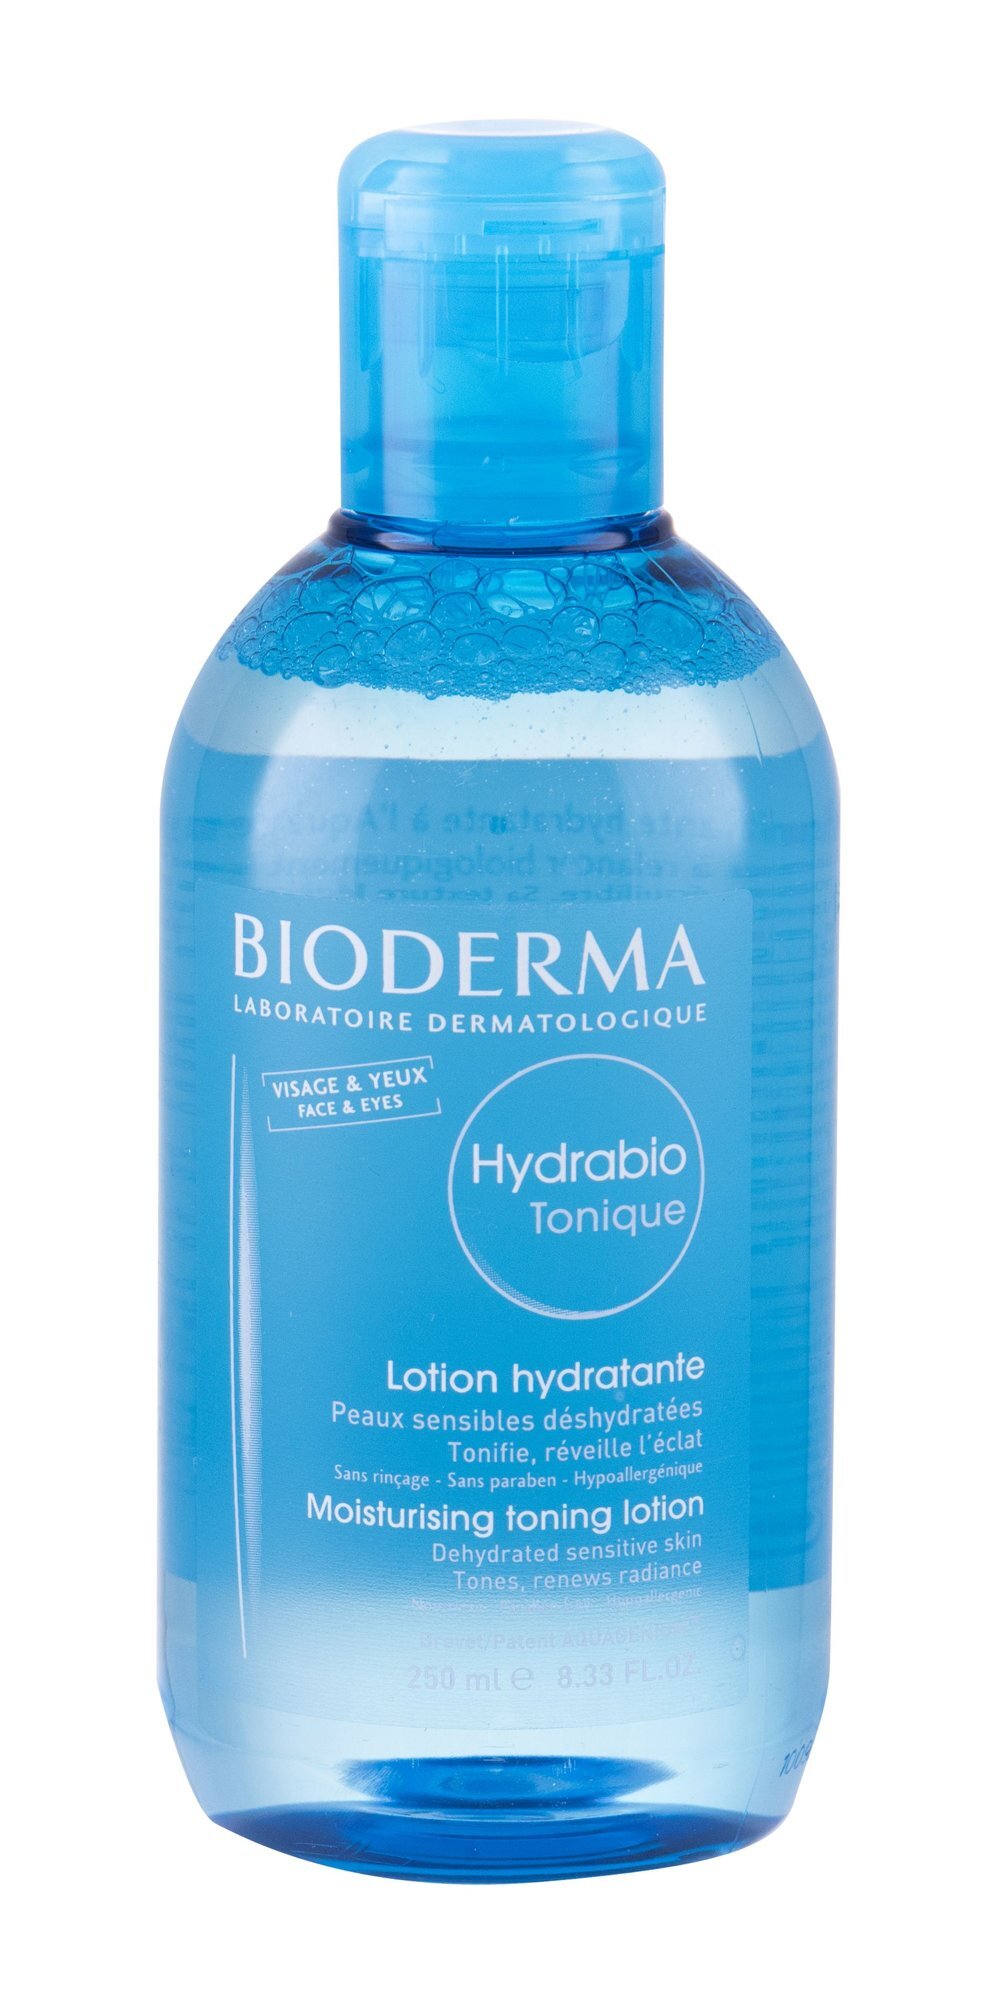 Drėkinamasis tonizuojantis veido tonikas Bioderma Hydrabio 250 ml kaina |  pigu.lt